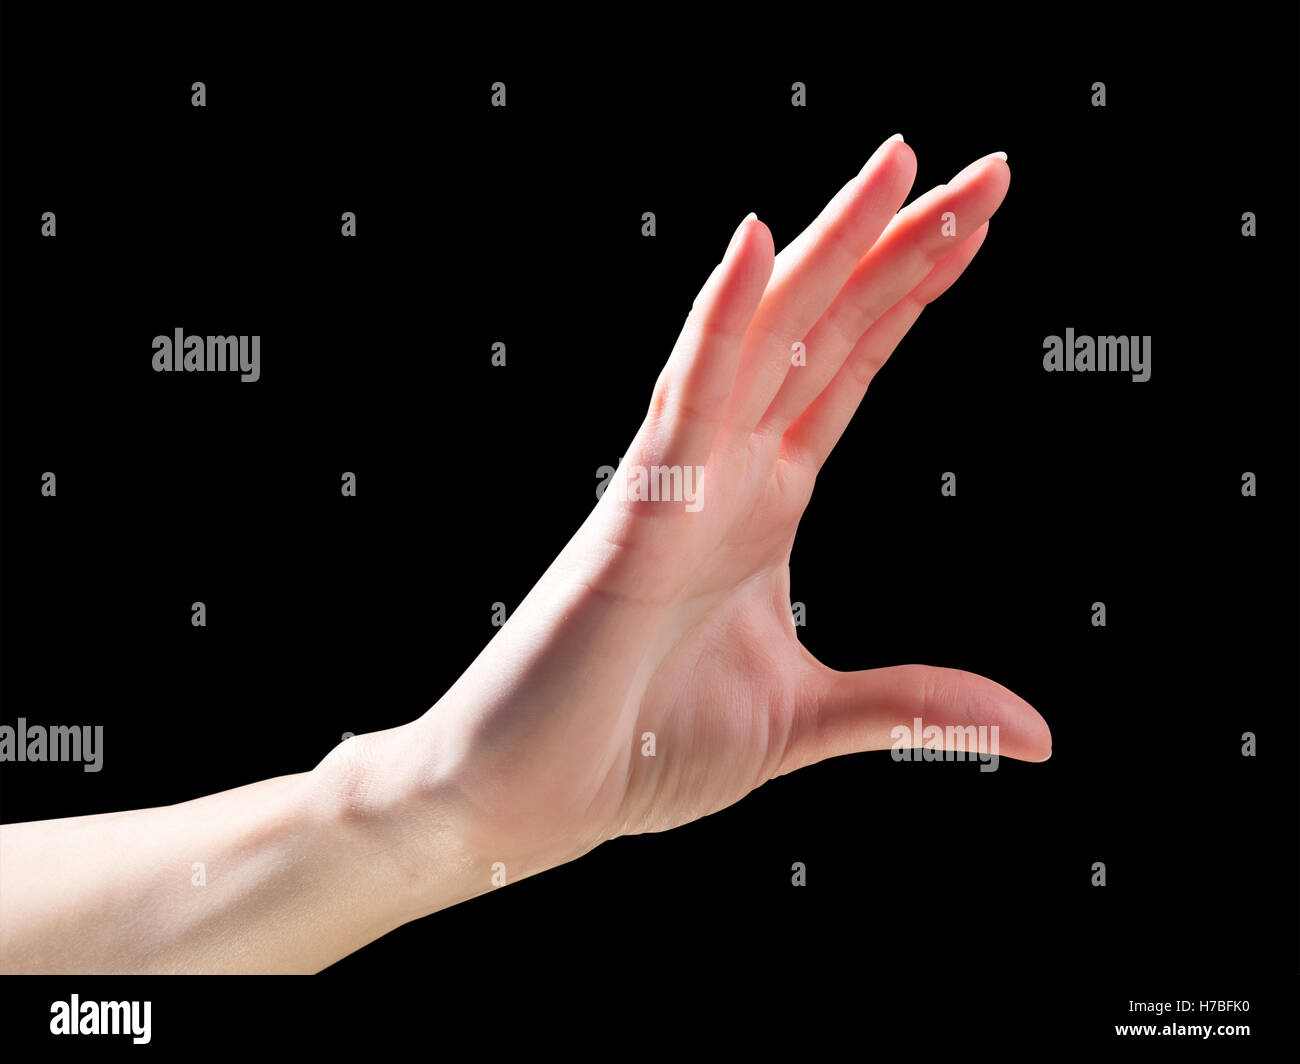 Frau Hand halten oder etwas Unsichtbares Geste zu messen. Isoliert auf schwarz mit Beschneidungspfad Stockfoto